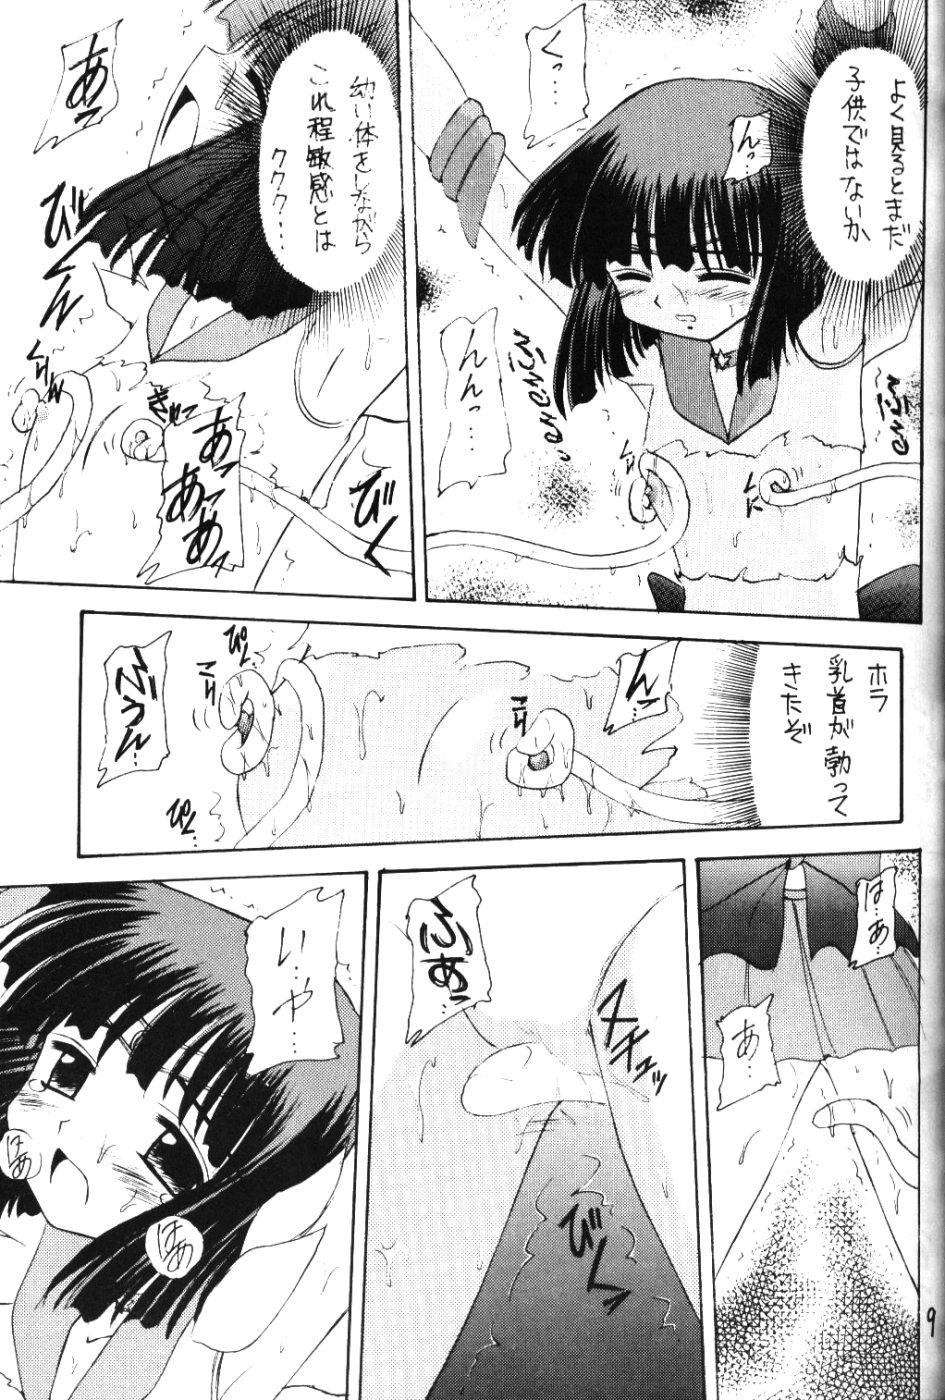 Clothed Sex Hotaru VI - Sailor moon Masturbandose - Page 8